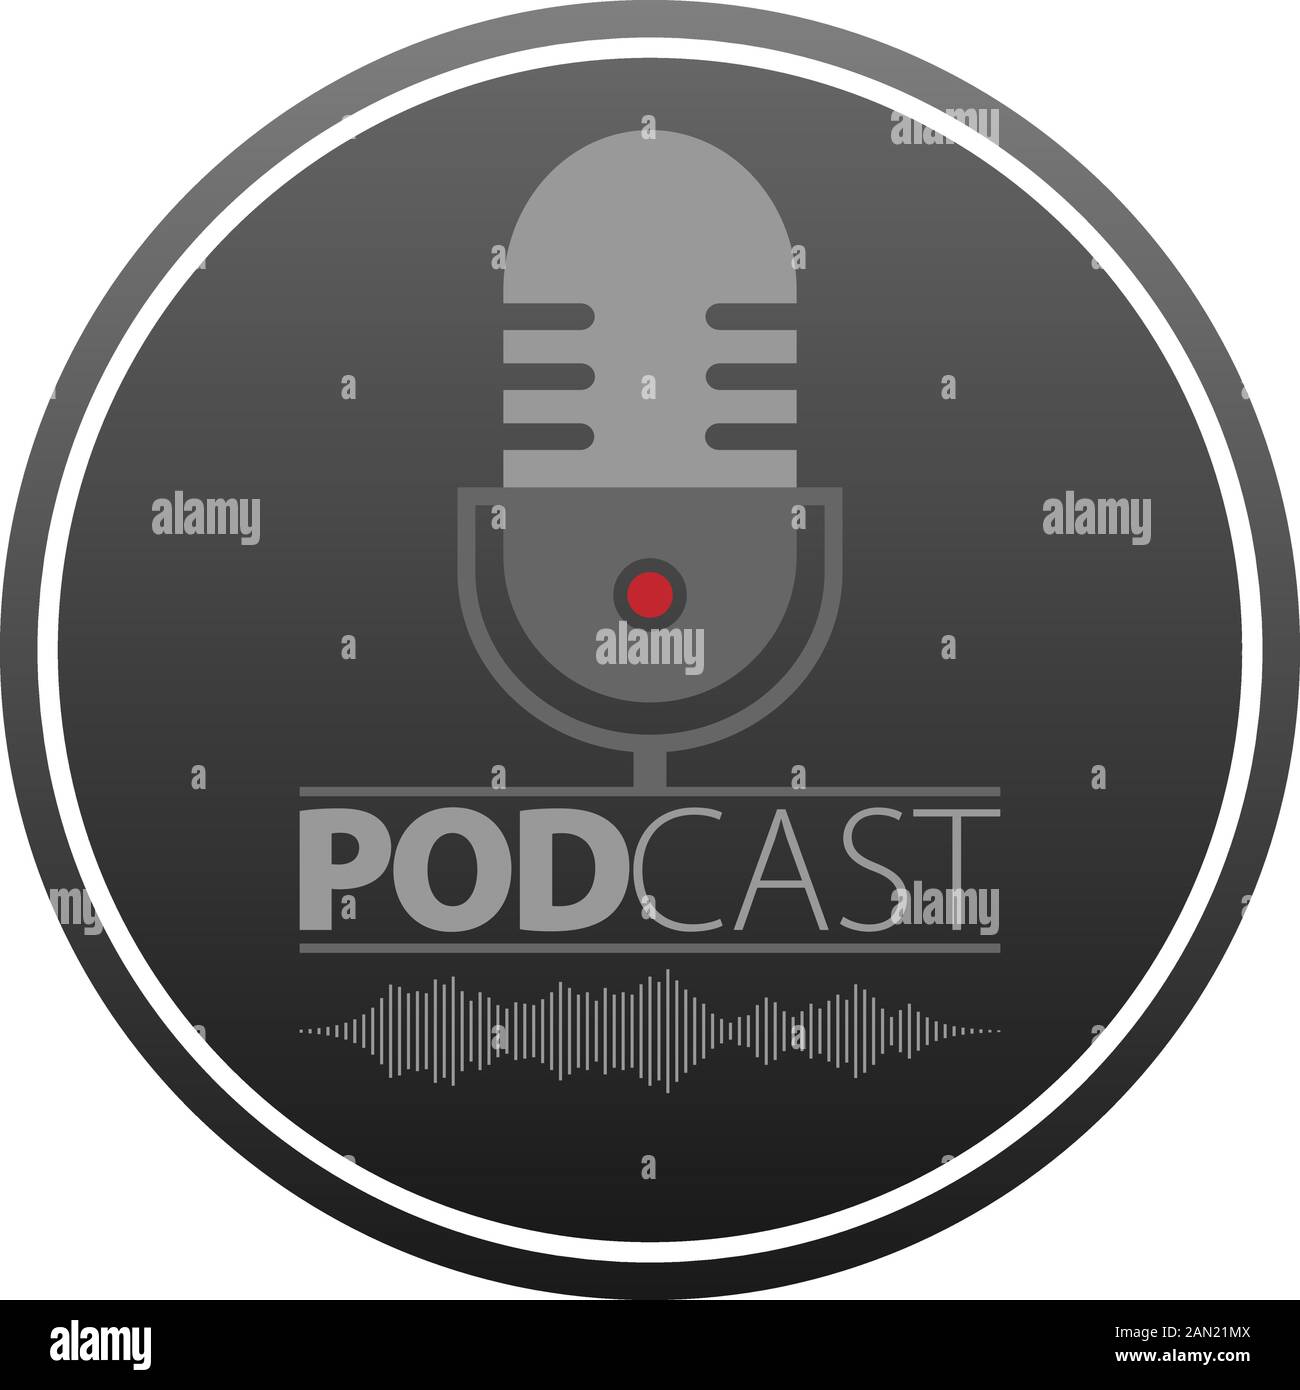 simbolo di podcasting con microfono e immagine vettoriale della forma d'onda audio, logo del concetto di registrazione podcast Illustrazione Vettoriale